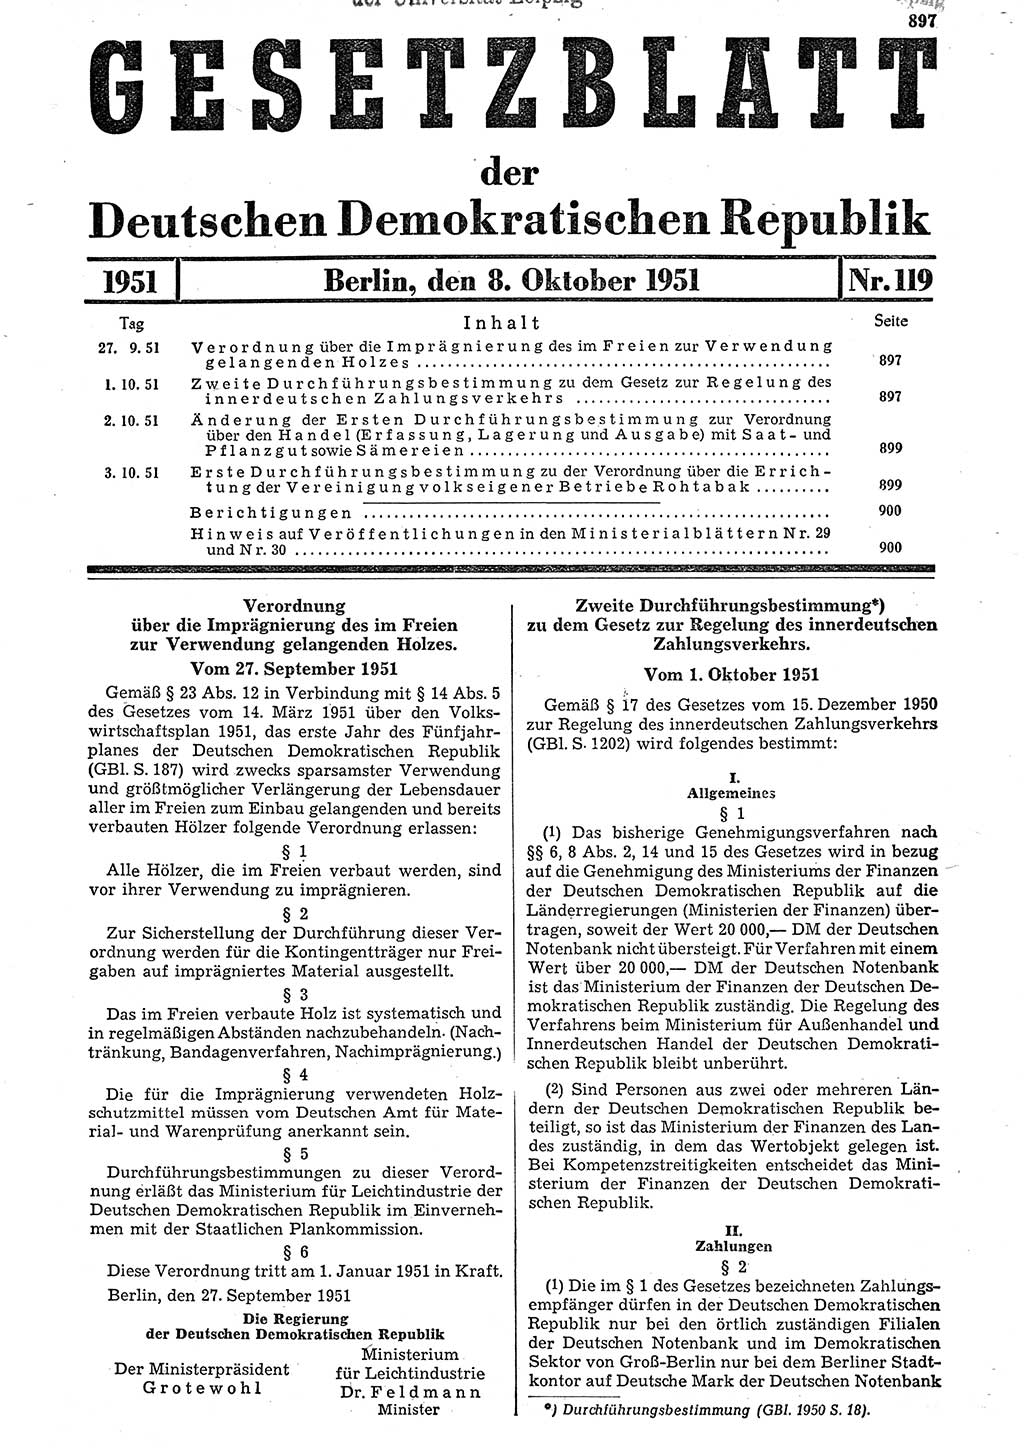 Gesetzblatt (GBl.) der Deutschen Demokratischen Republik (DDR) 1951, Seite 897 (GBl. DDR 1951, S. 897)